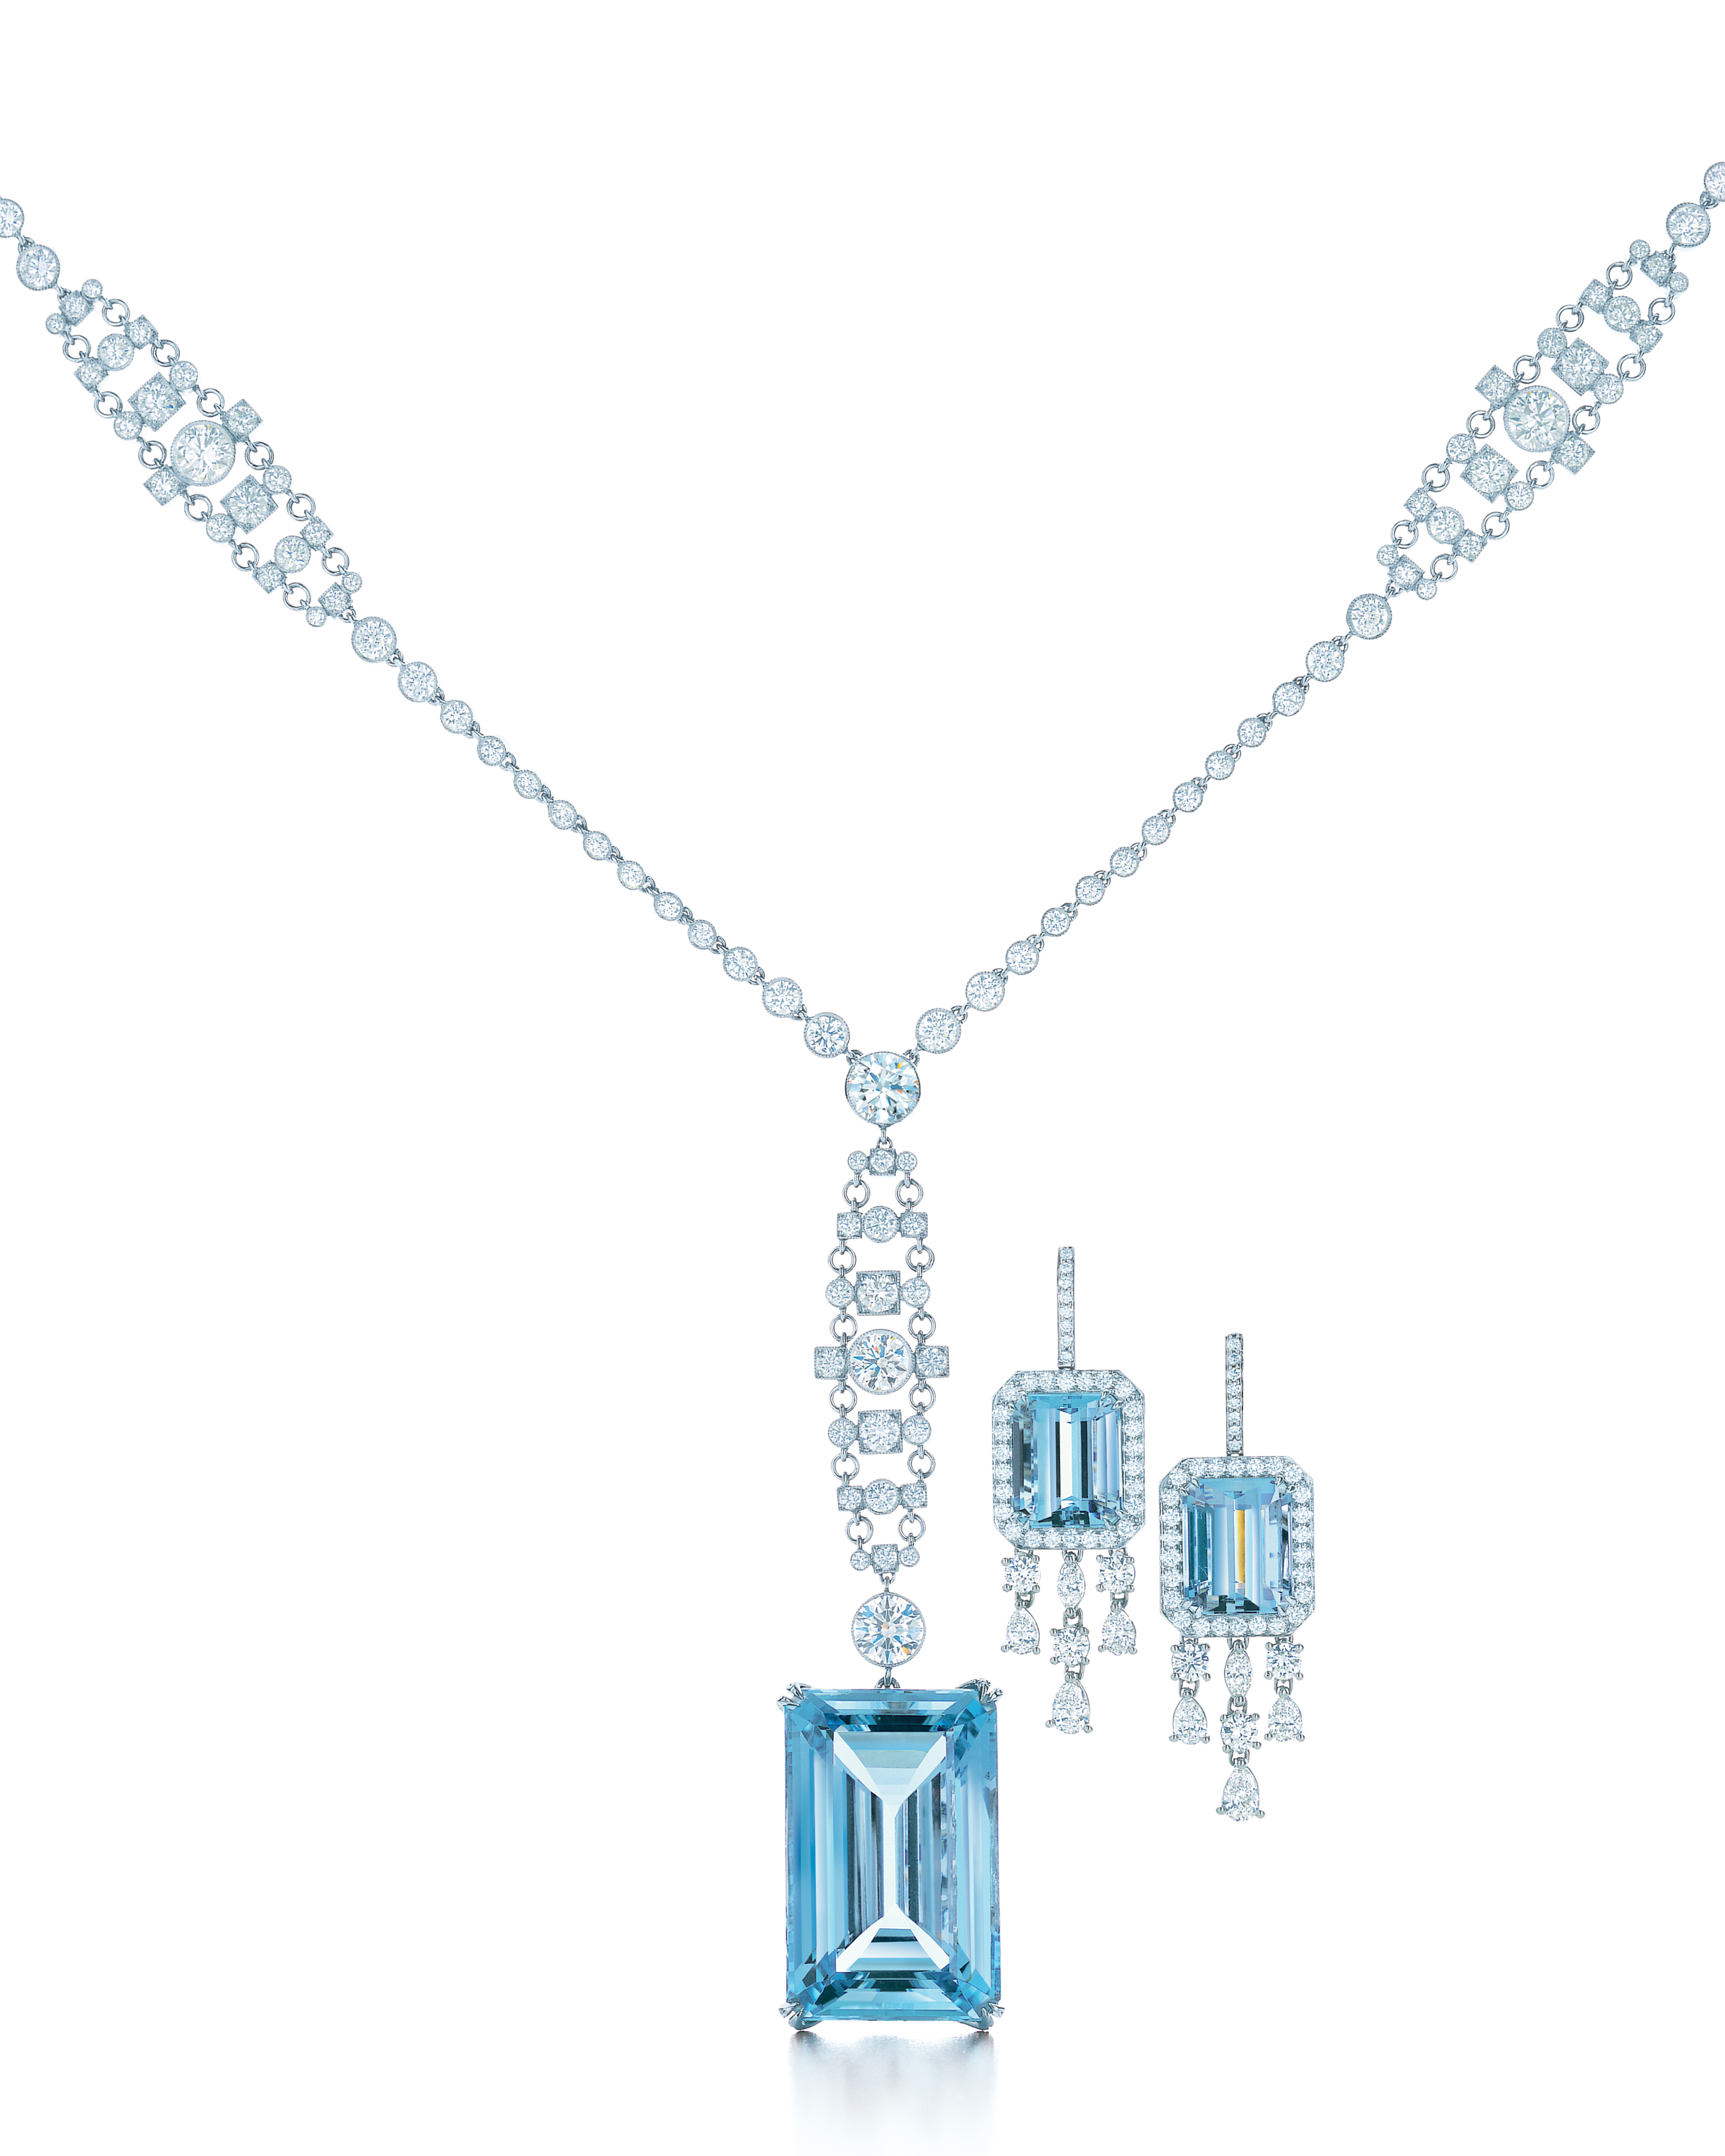 The Great Gatsby: Tiffany \u0026 Co. unveils 